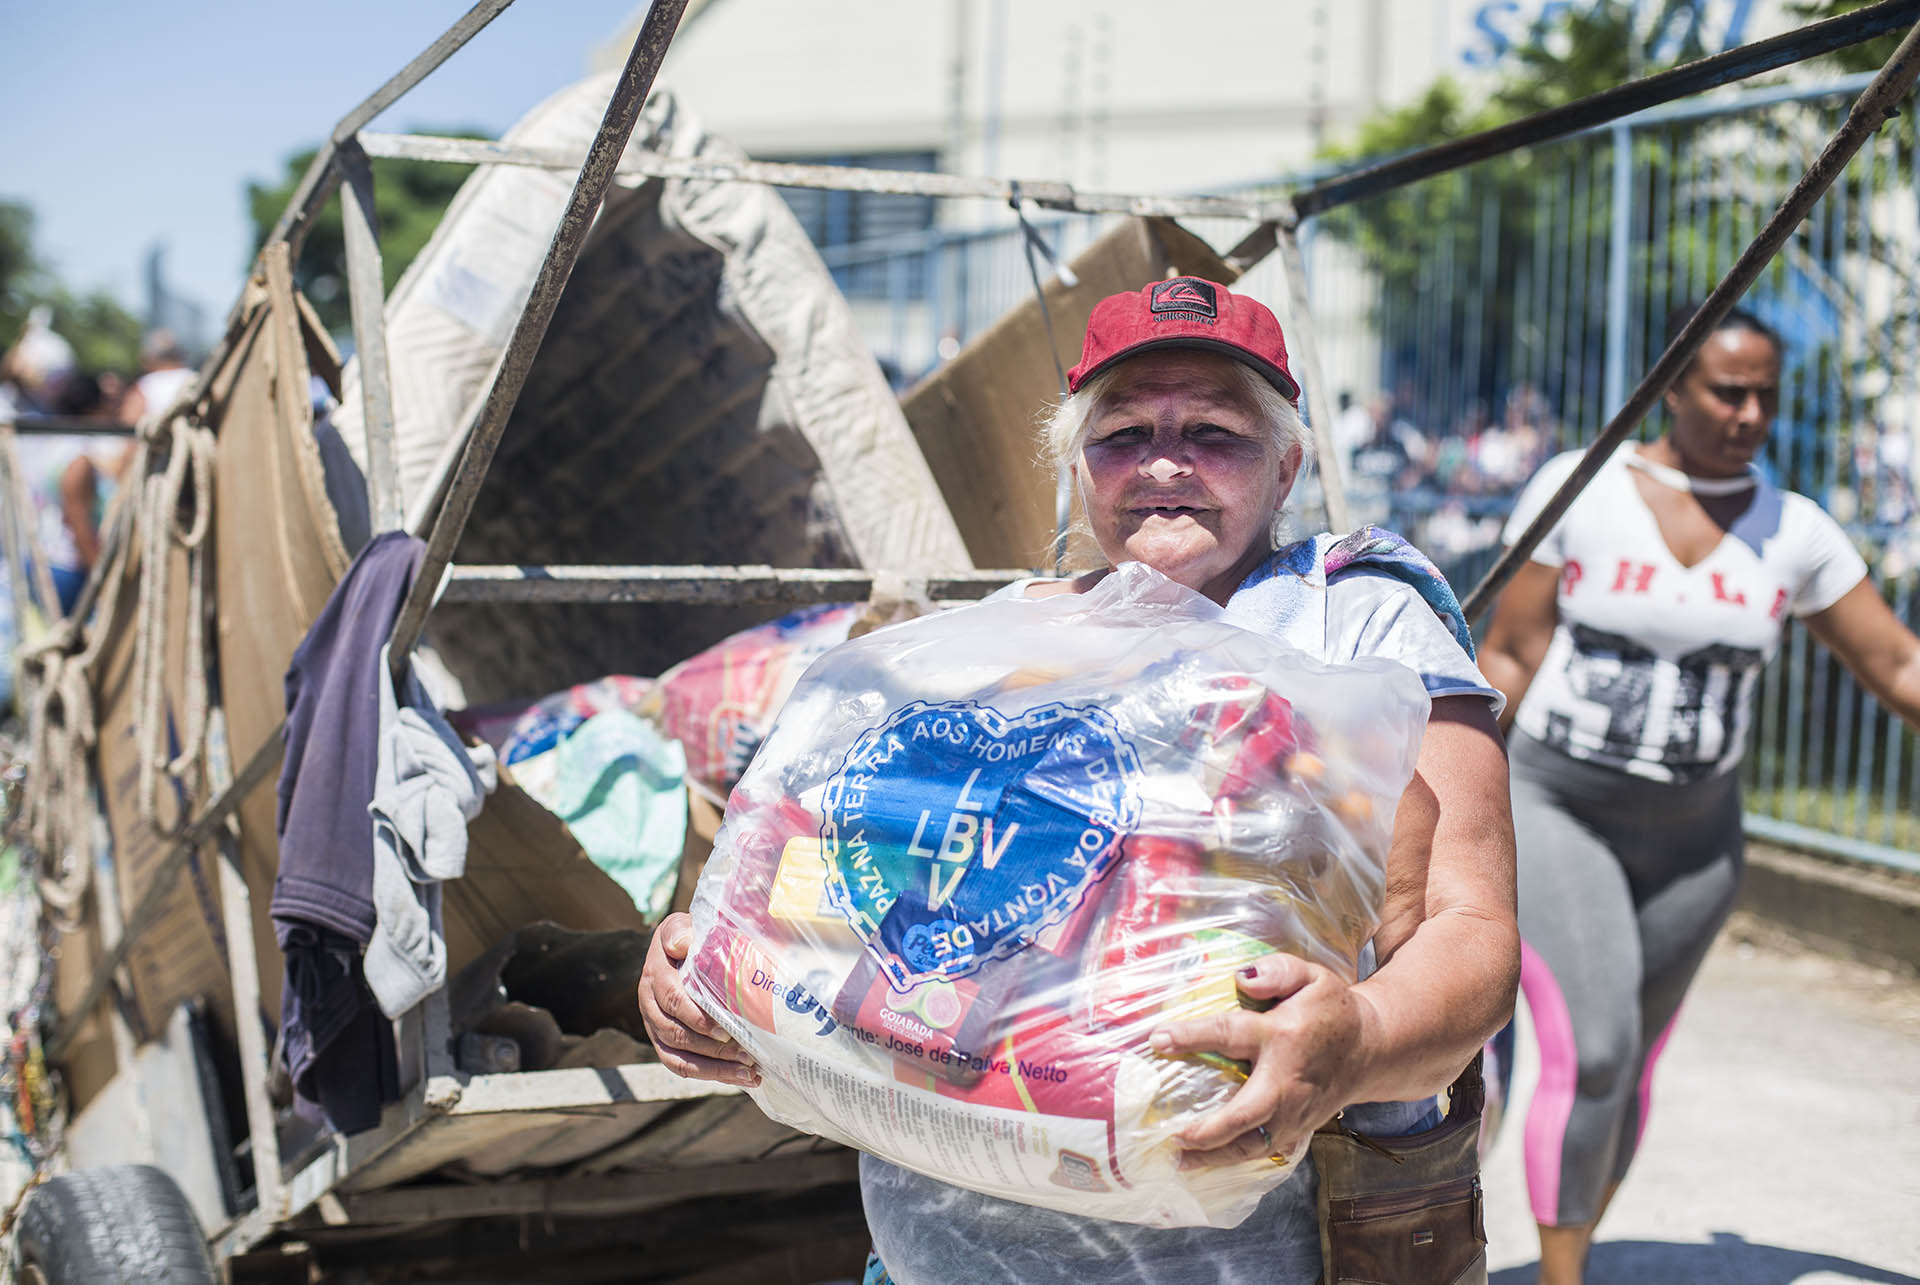 LBV entrega mais de 60 toneladas de alimentos no Rio Grande do Sul | LBV -  Legião da Boa Vontade